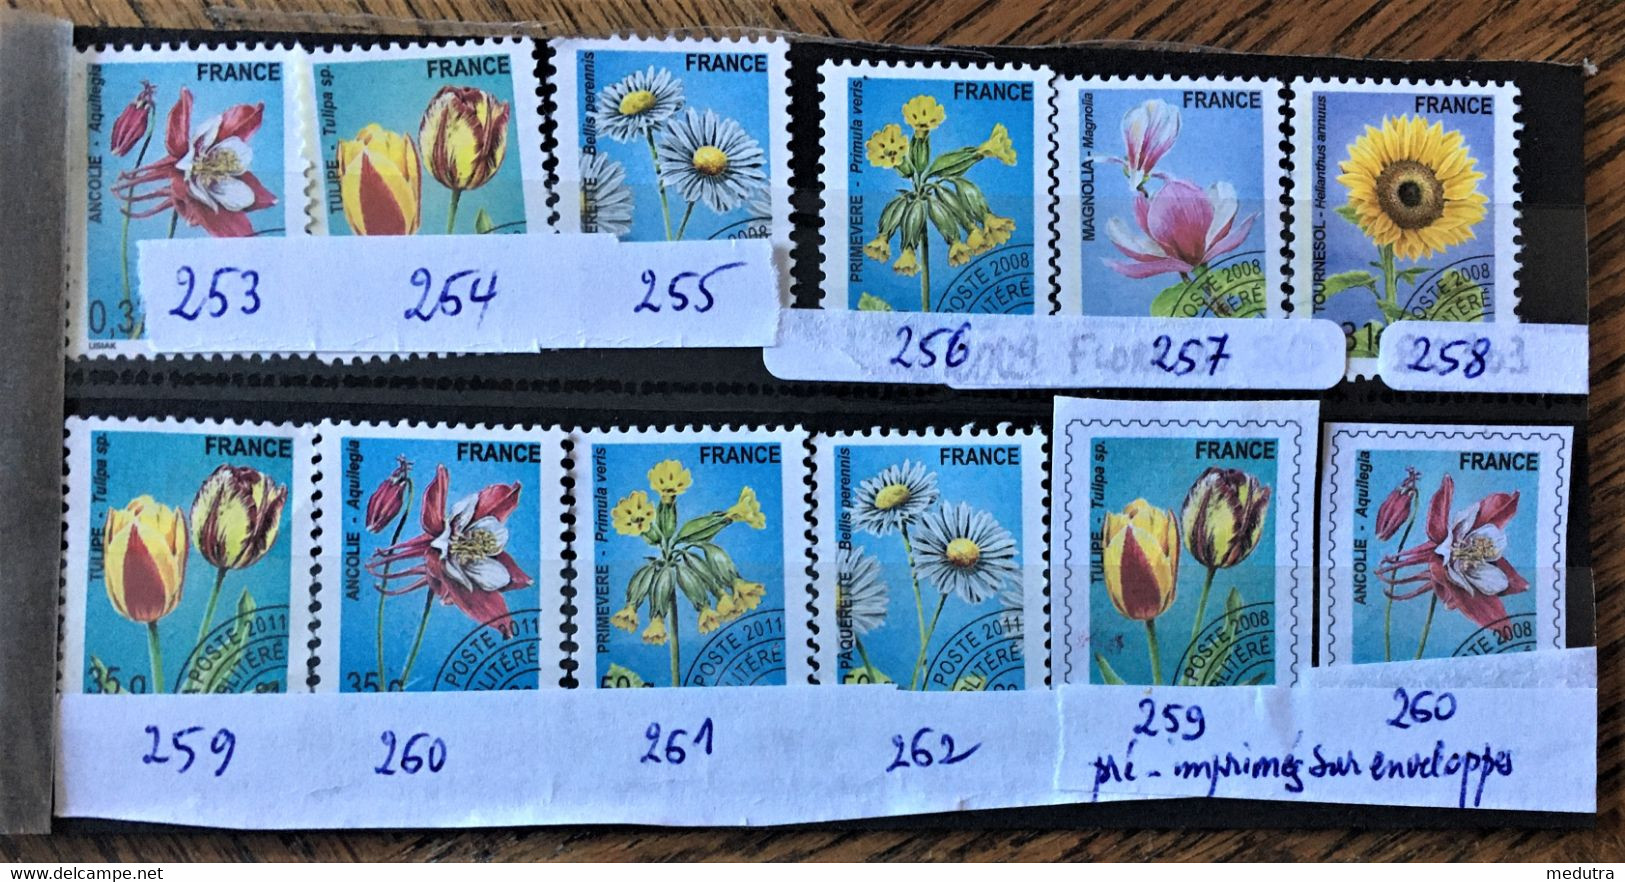 Préo : du 123 au 262 : 140 timbres préoblitérés en 12 séries complètes** (voir description)